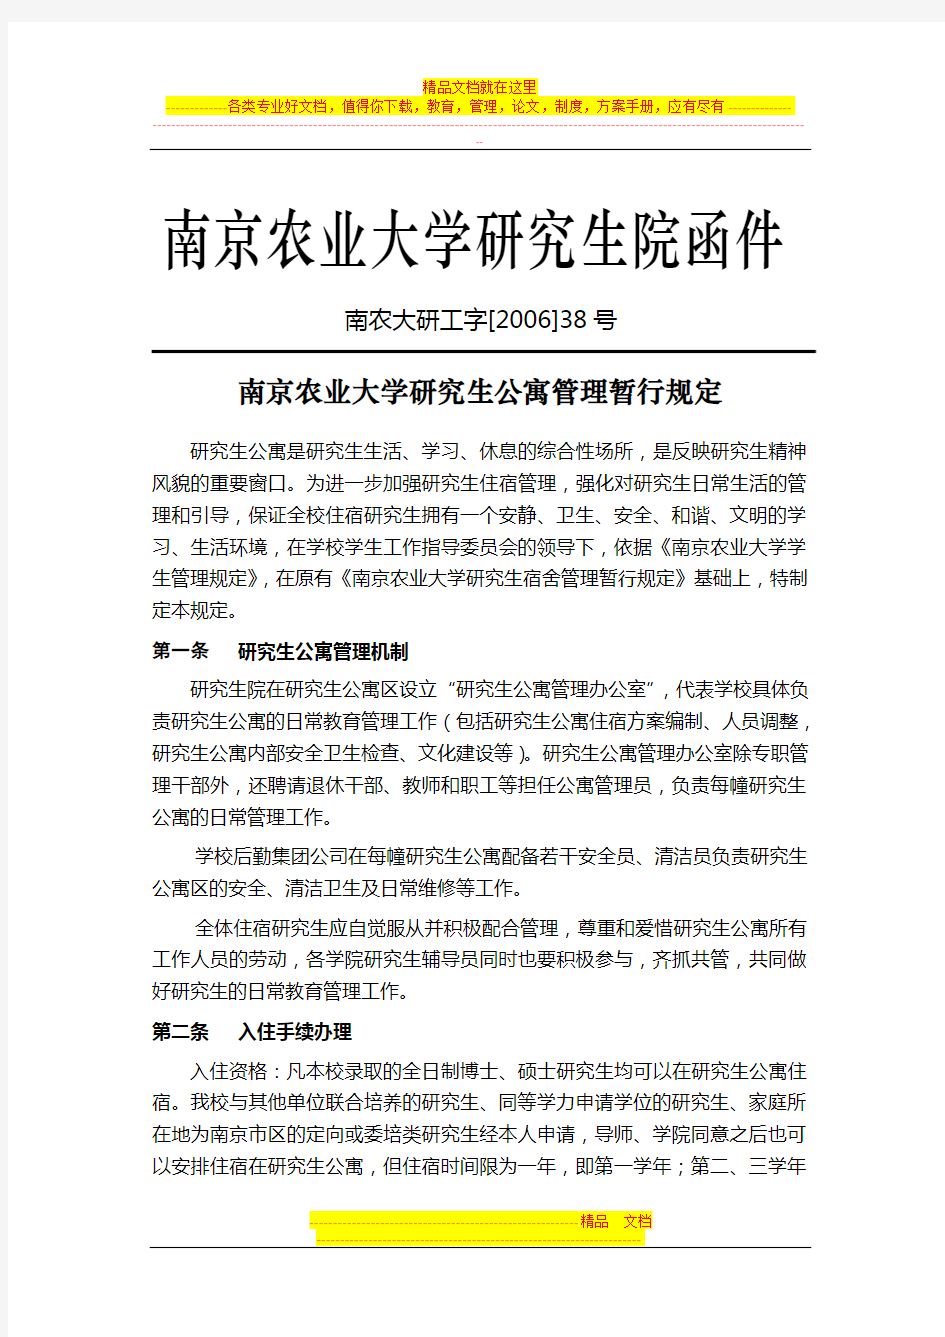 南京农业大学研究生公寓管理暂行规定